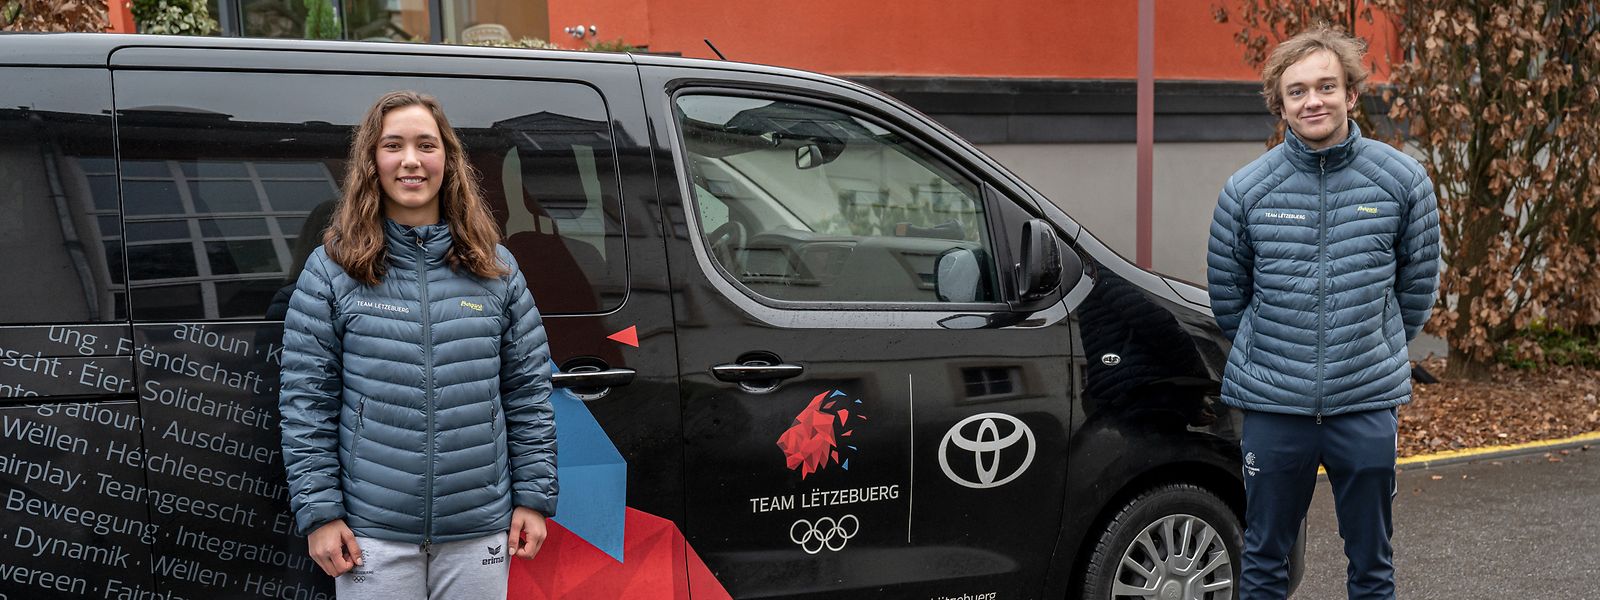 Matthieu Osch et Gwyneth ten Raa représenteront le Luxembourg aux Jeux olympiques d'hiver de Pékin et pourront tous les deux porter le drapeau national.